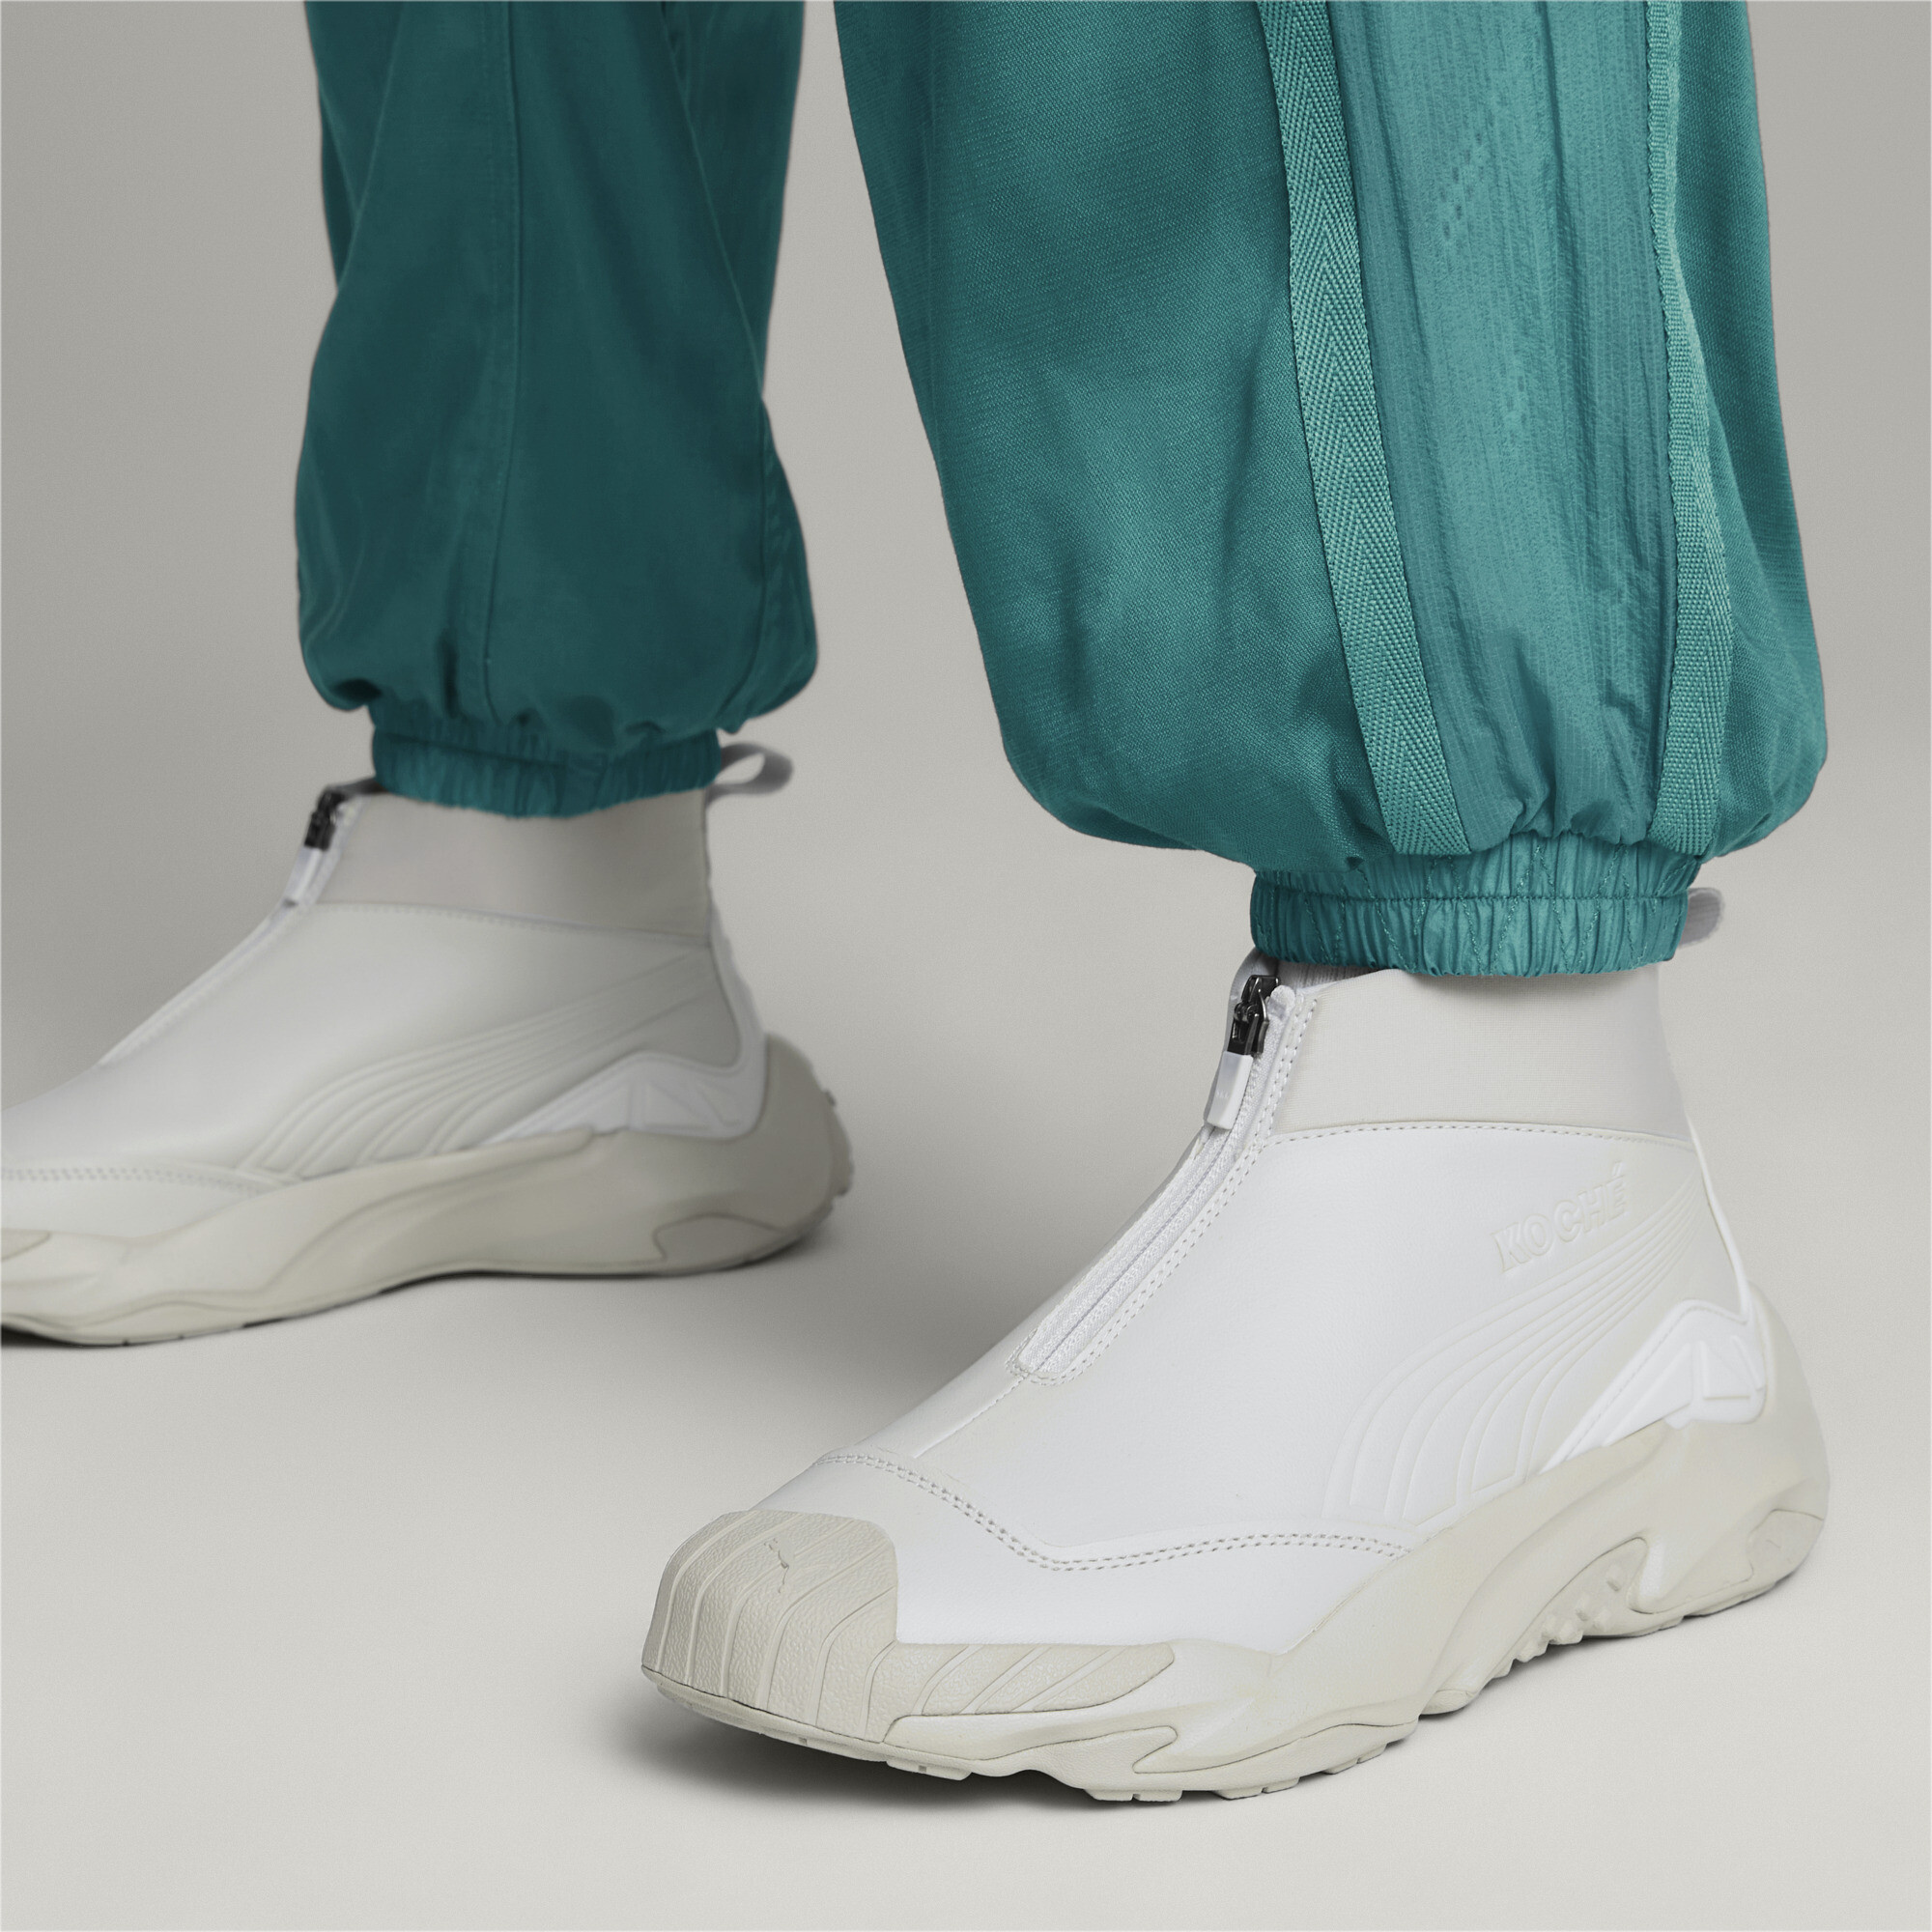 Men's PUMA X KOCHÃ Mid Plexus Sneakers In Gray, Size EU 39